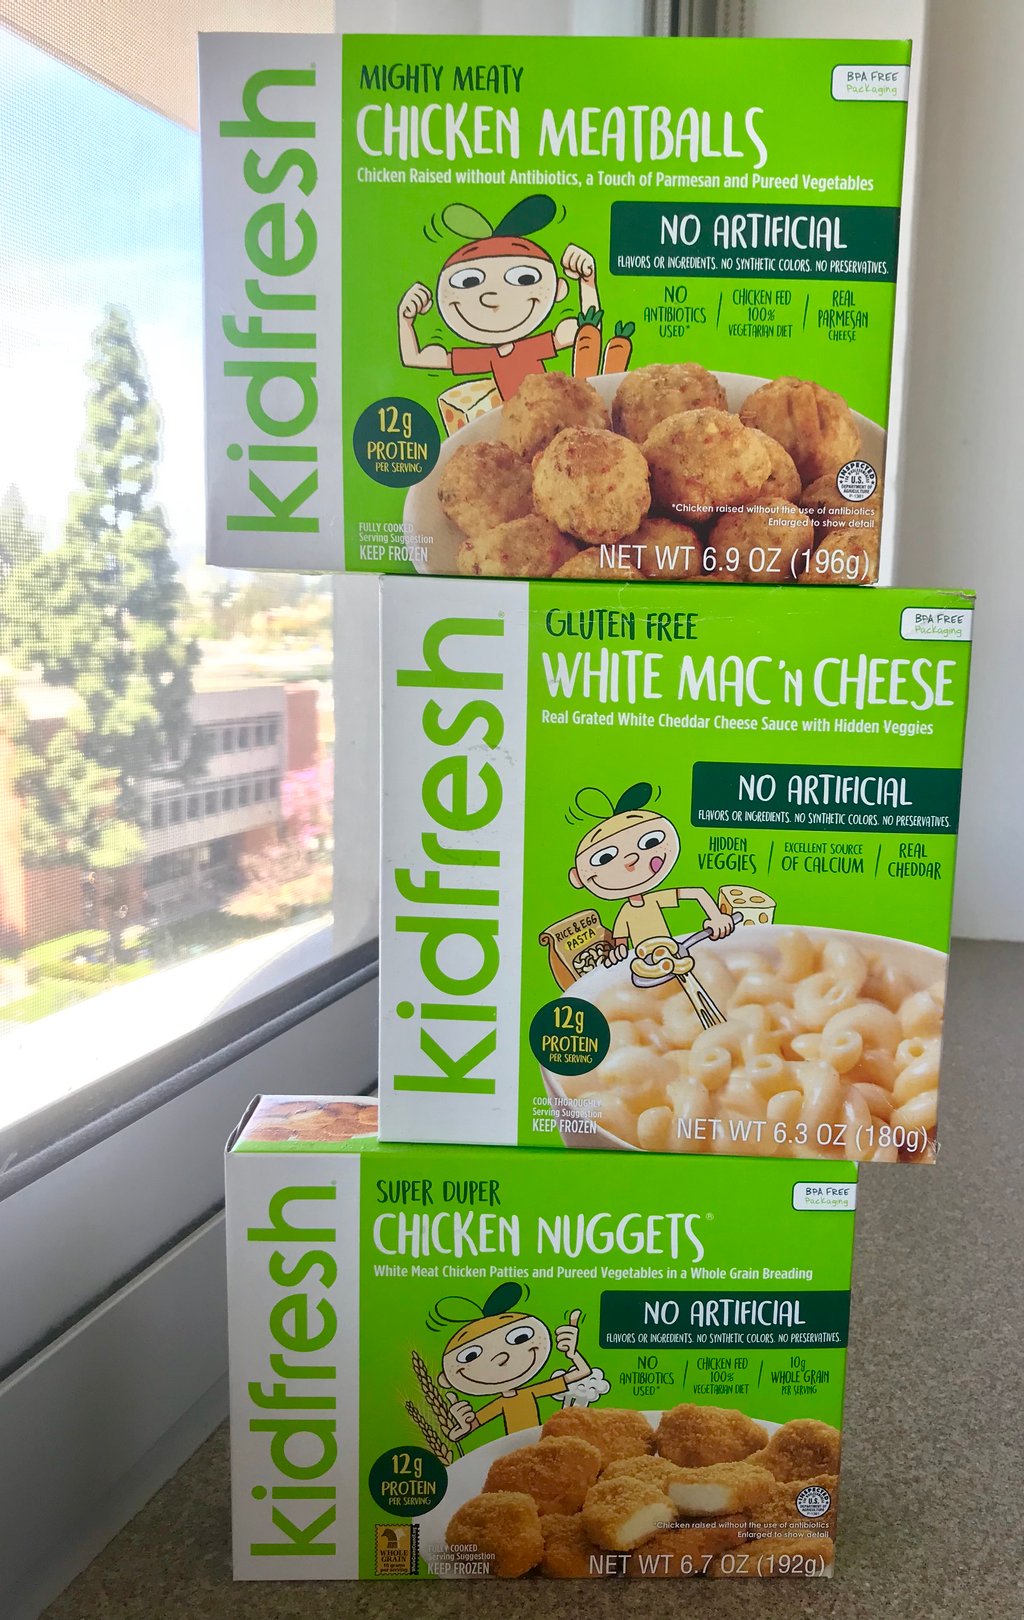 Chicken Nuggets - Kidfresh